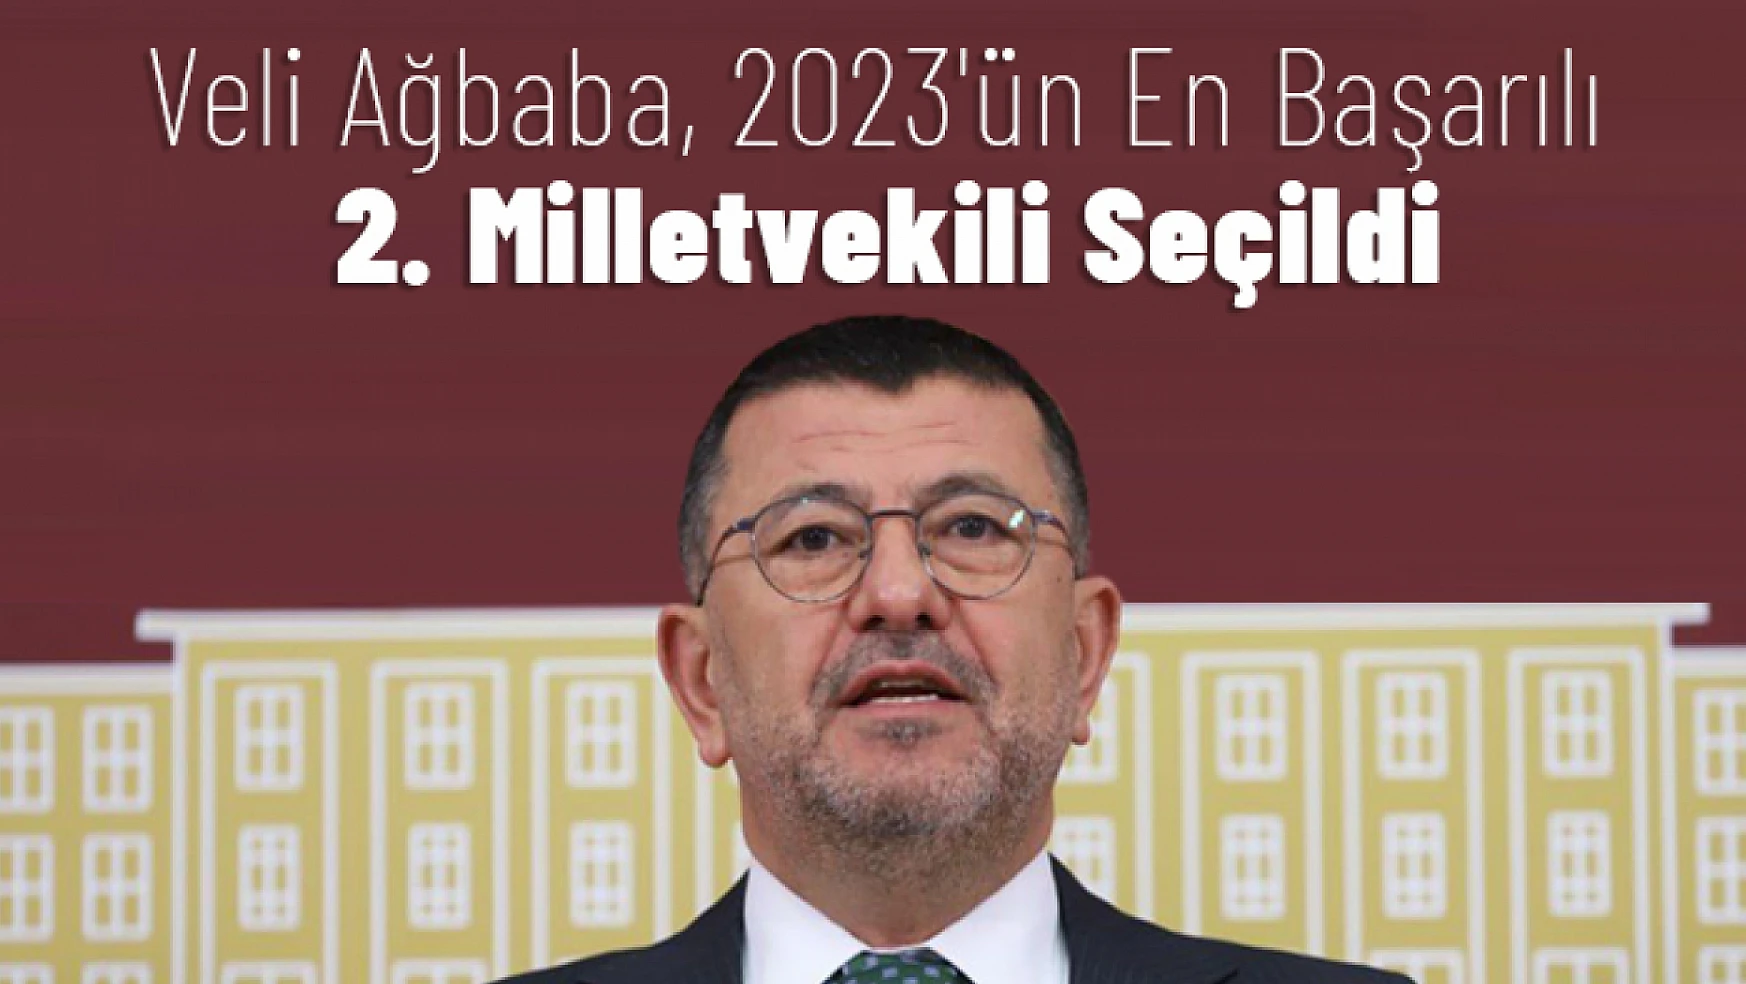 Veli Ağbaba, 2023'ün En Başarılı 2. Milletvekili Seçildi